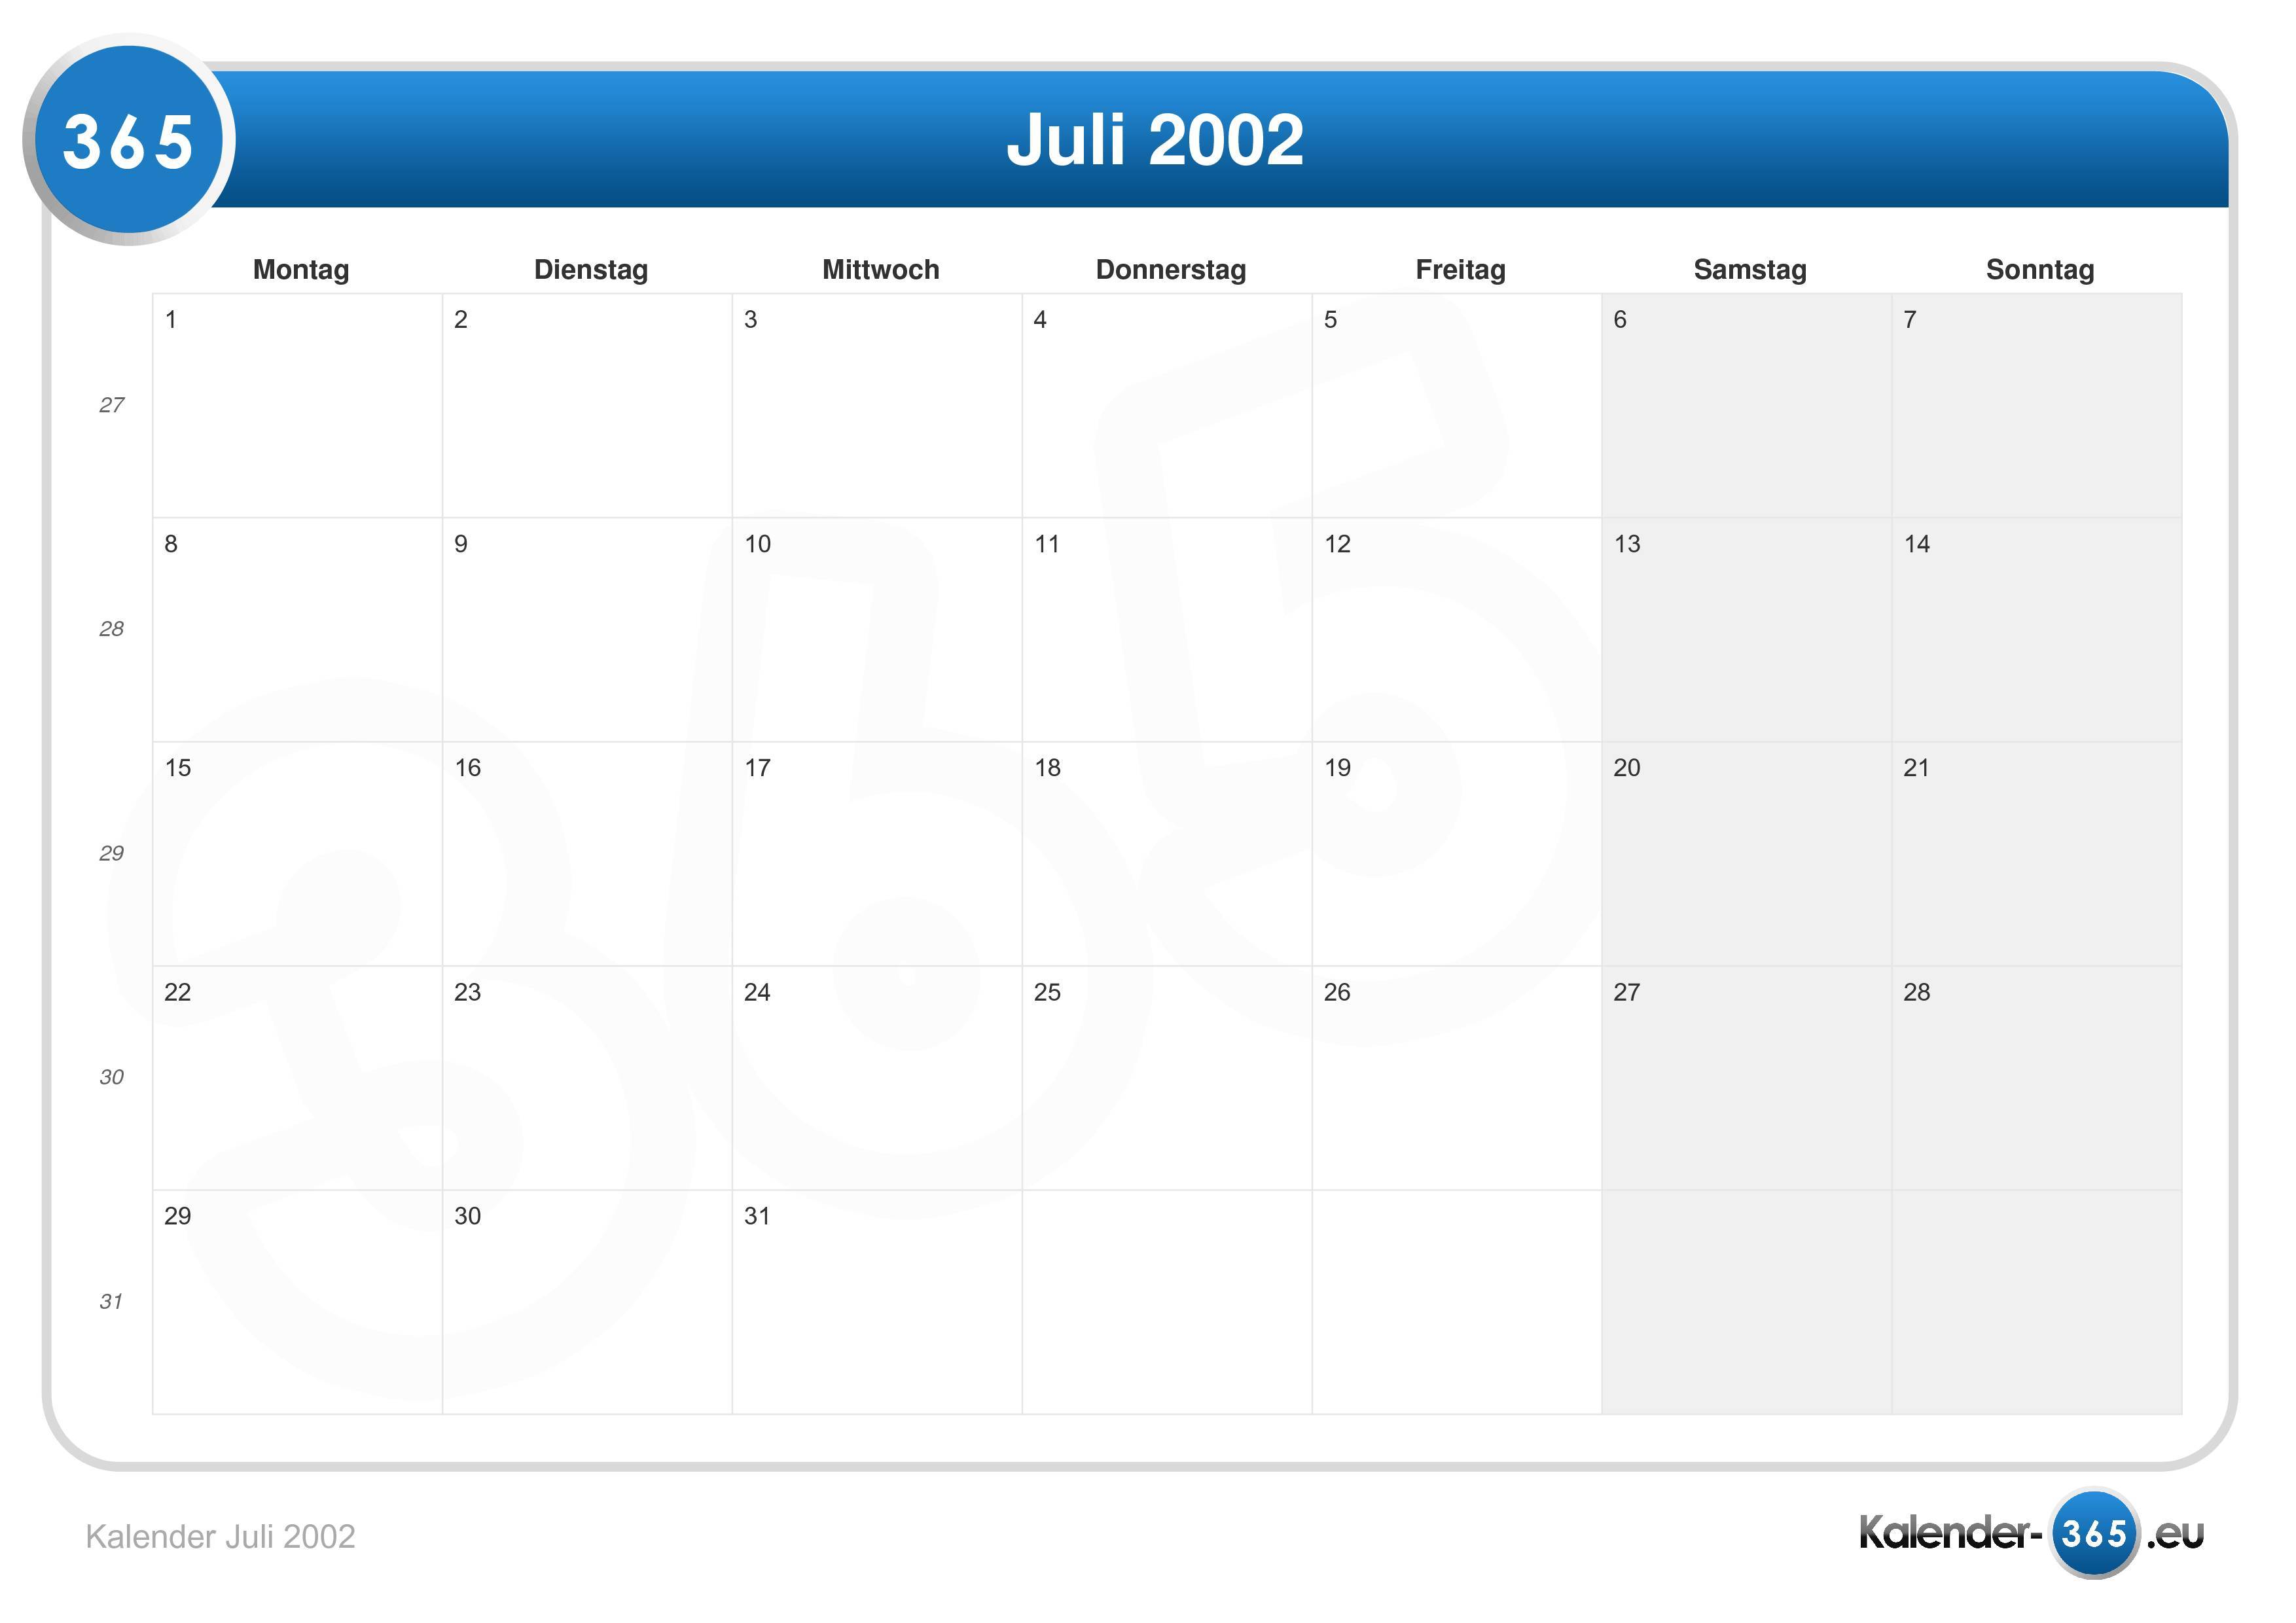 Kalender juli 2002 lengkap dengan weton